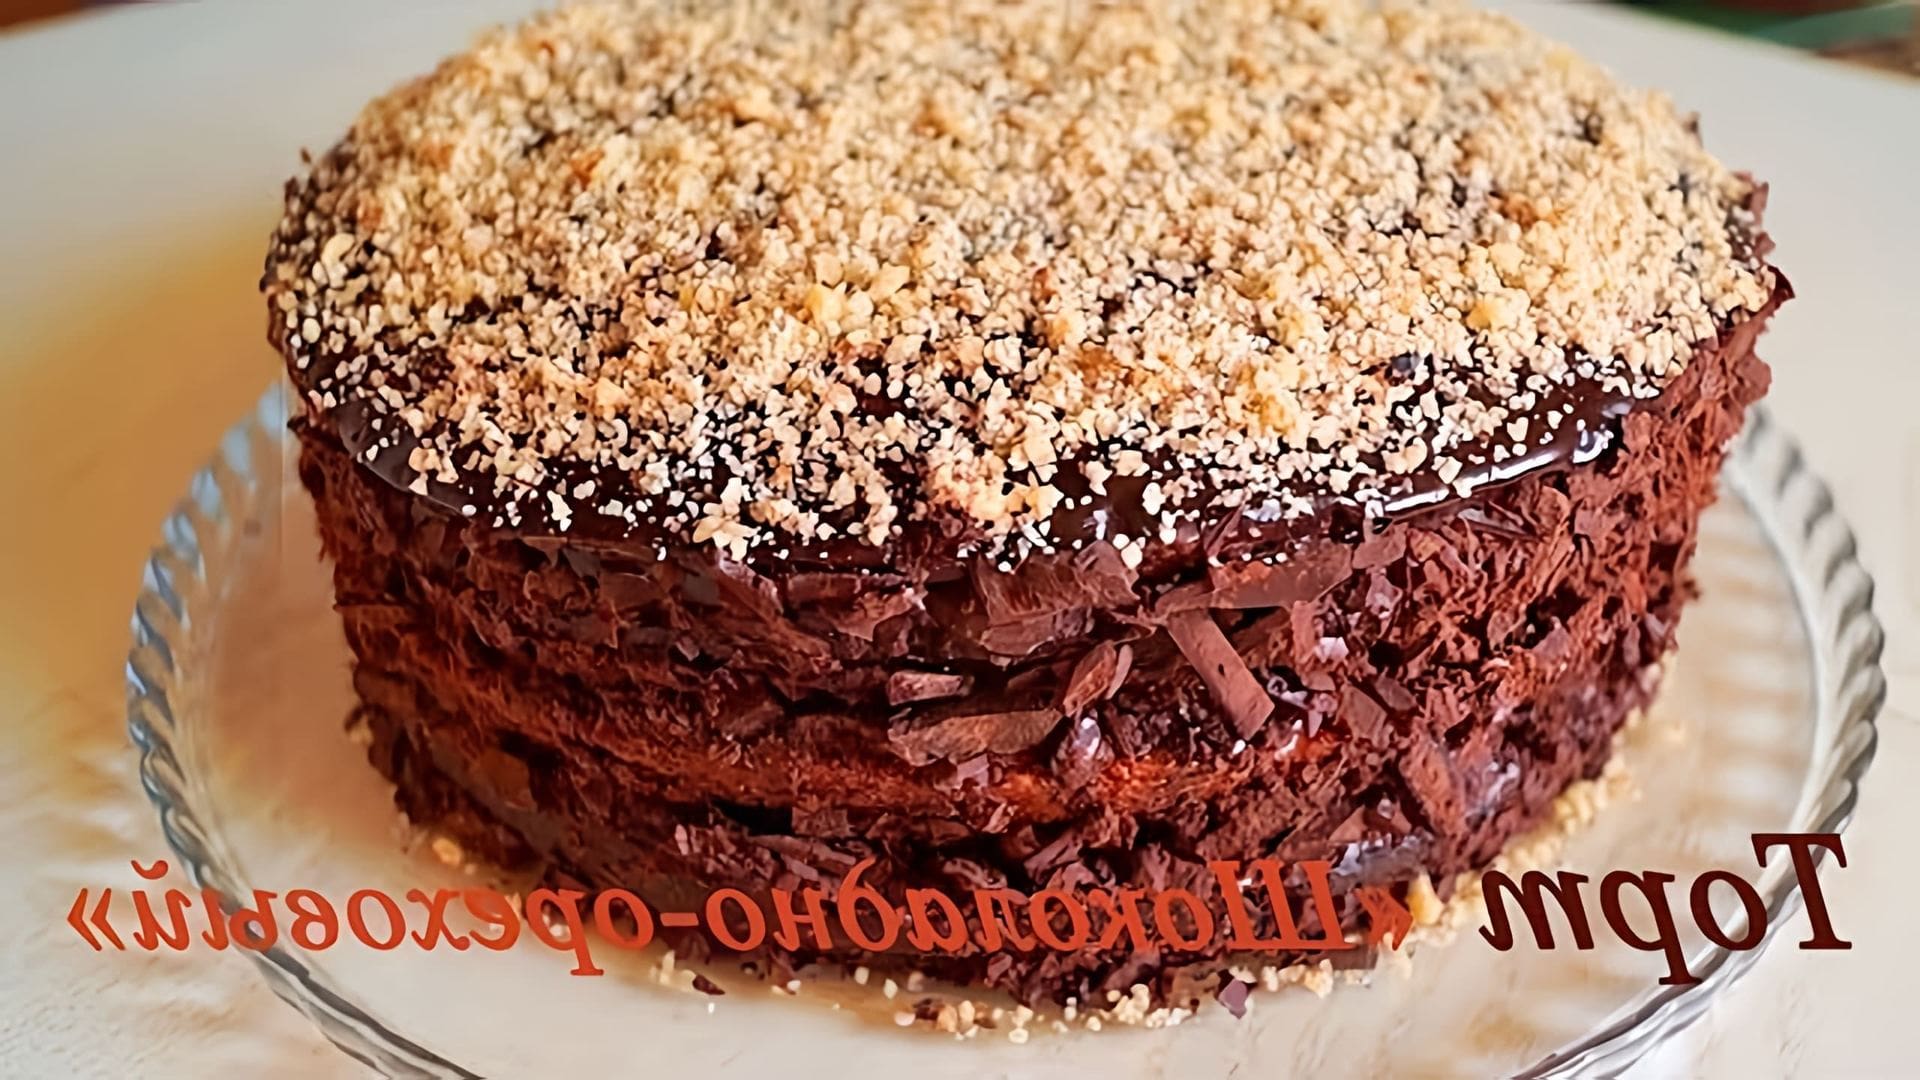 Шоколадно-Ореховый Торт - это нежный, сочный и очень вкусный десерт, который можно приготовить в домашних условиях